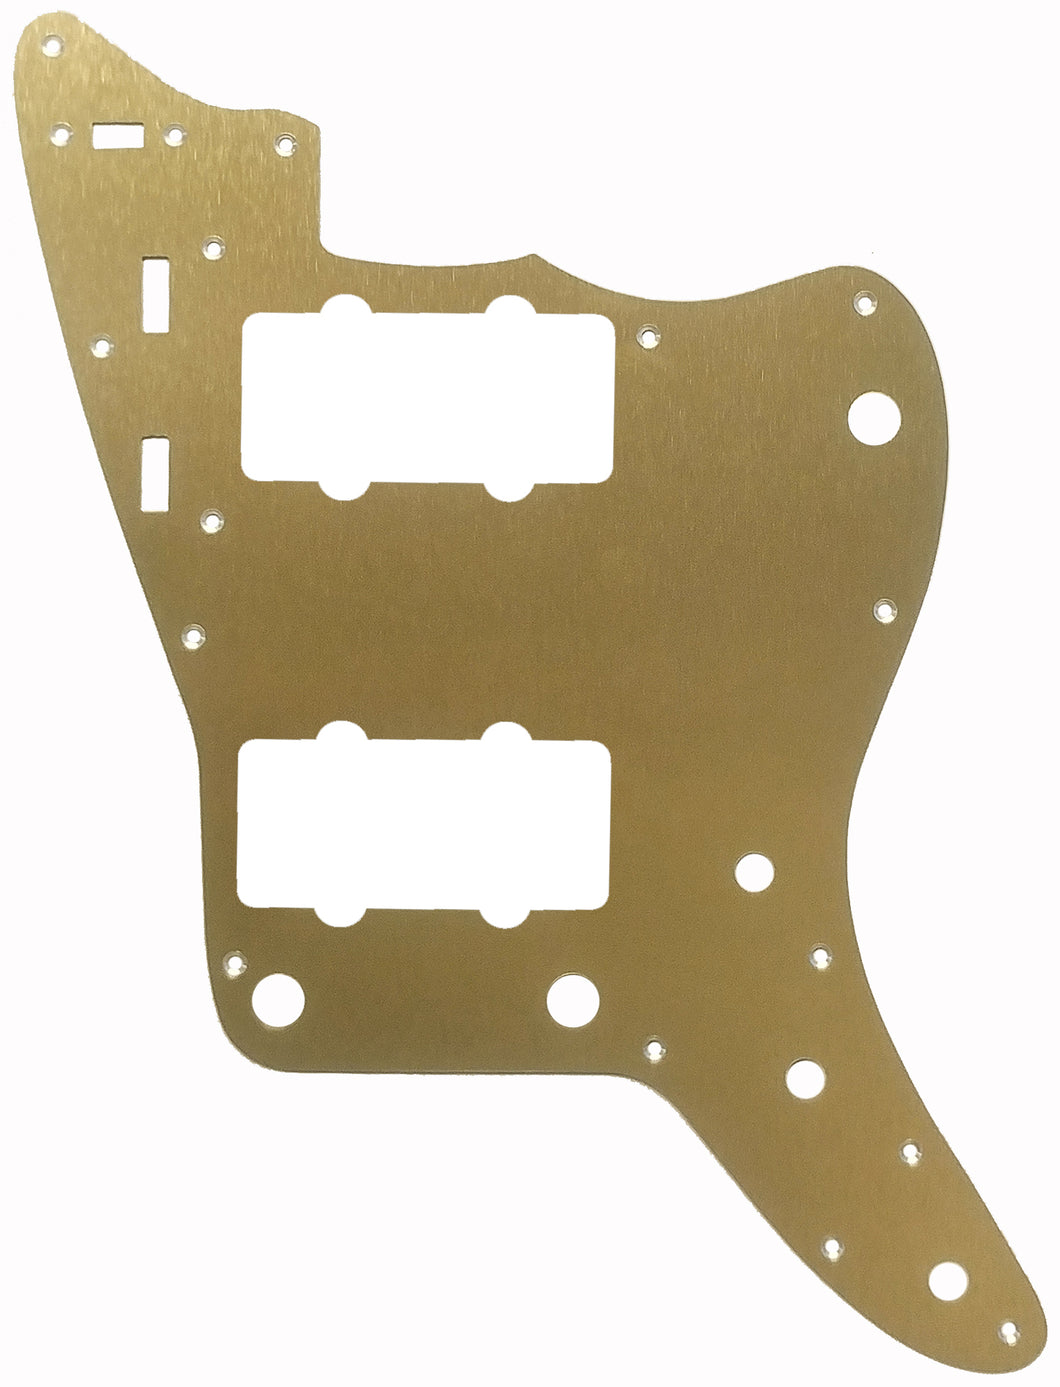 Fender Jazzmaster Pickguard Anodized Gold Aluminum